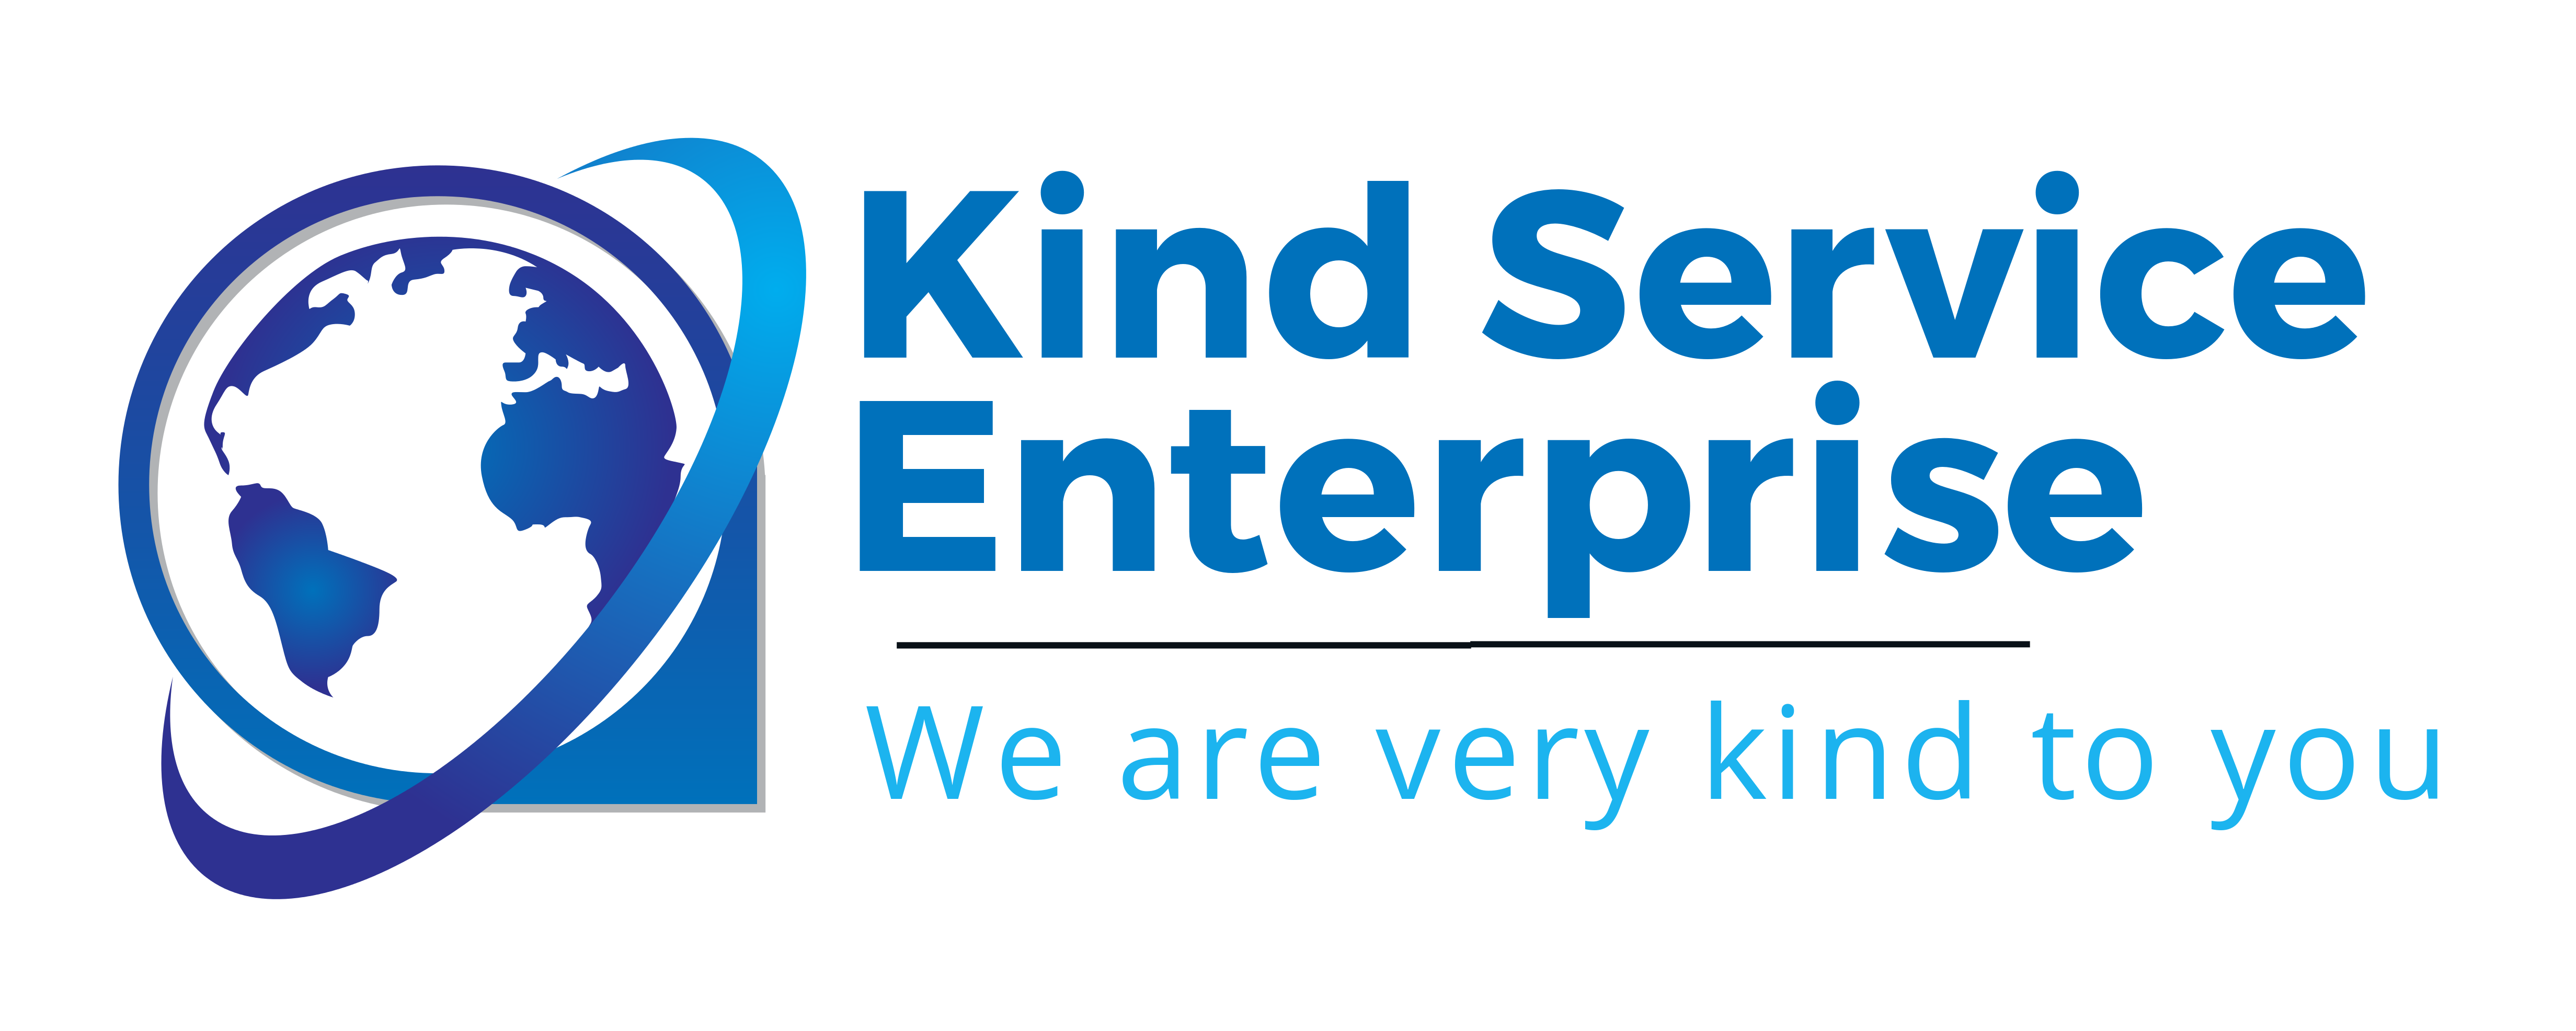 Kind Service Enterprise